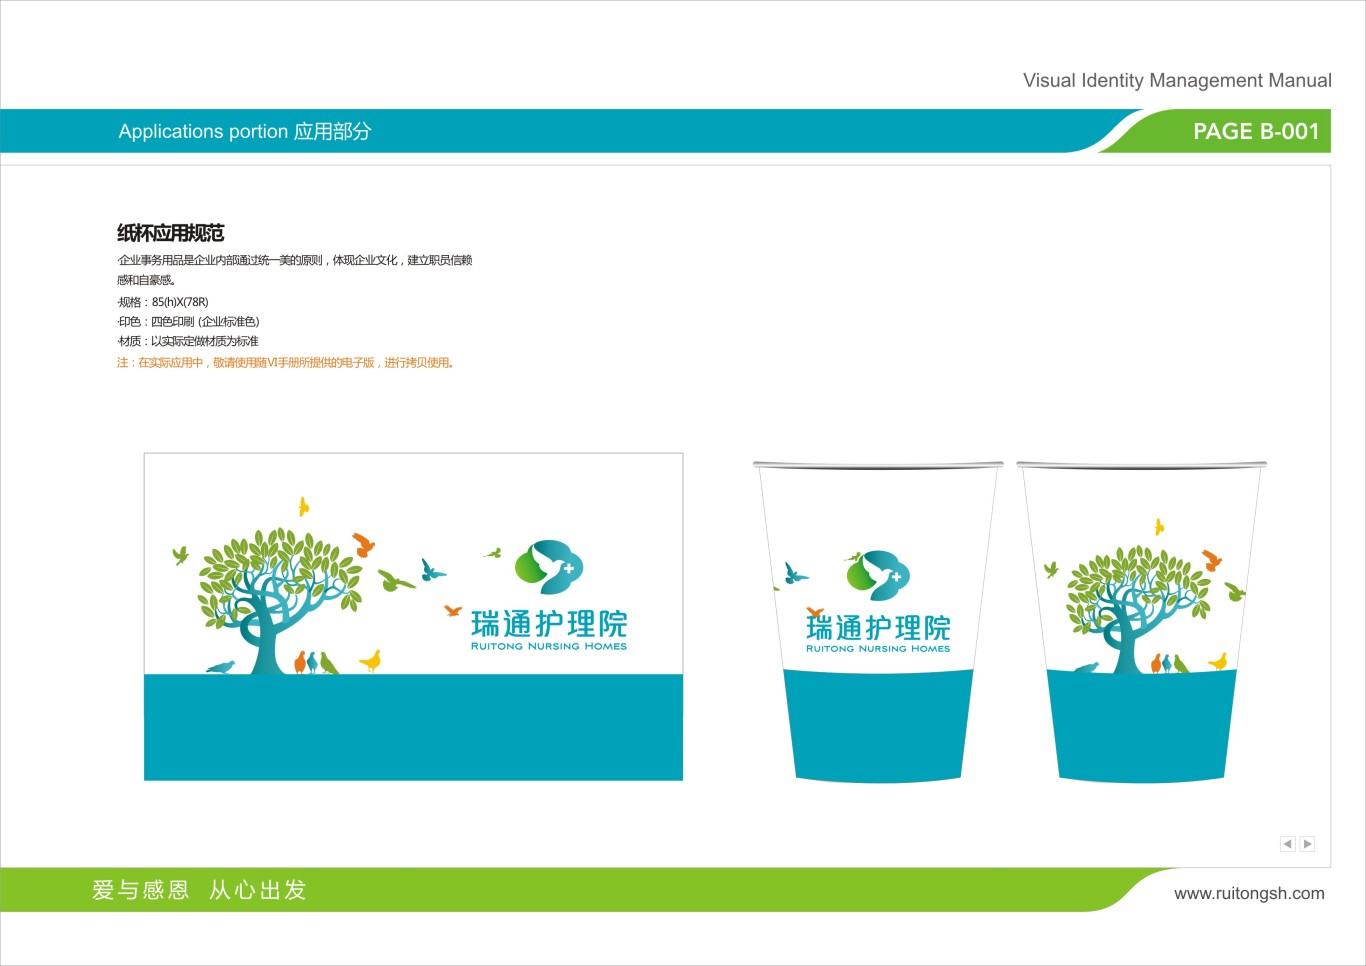 上海瑞通护理院标志VI设计图48